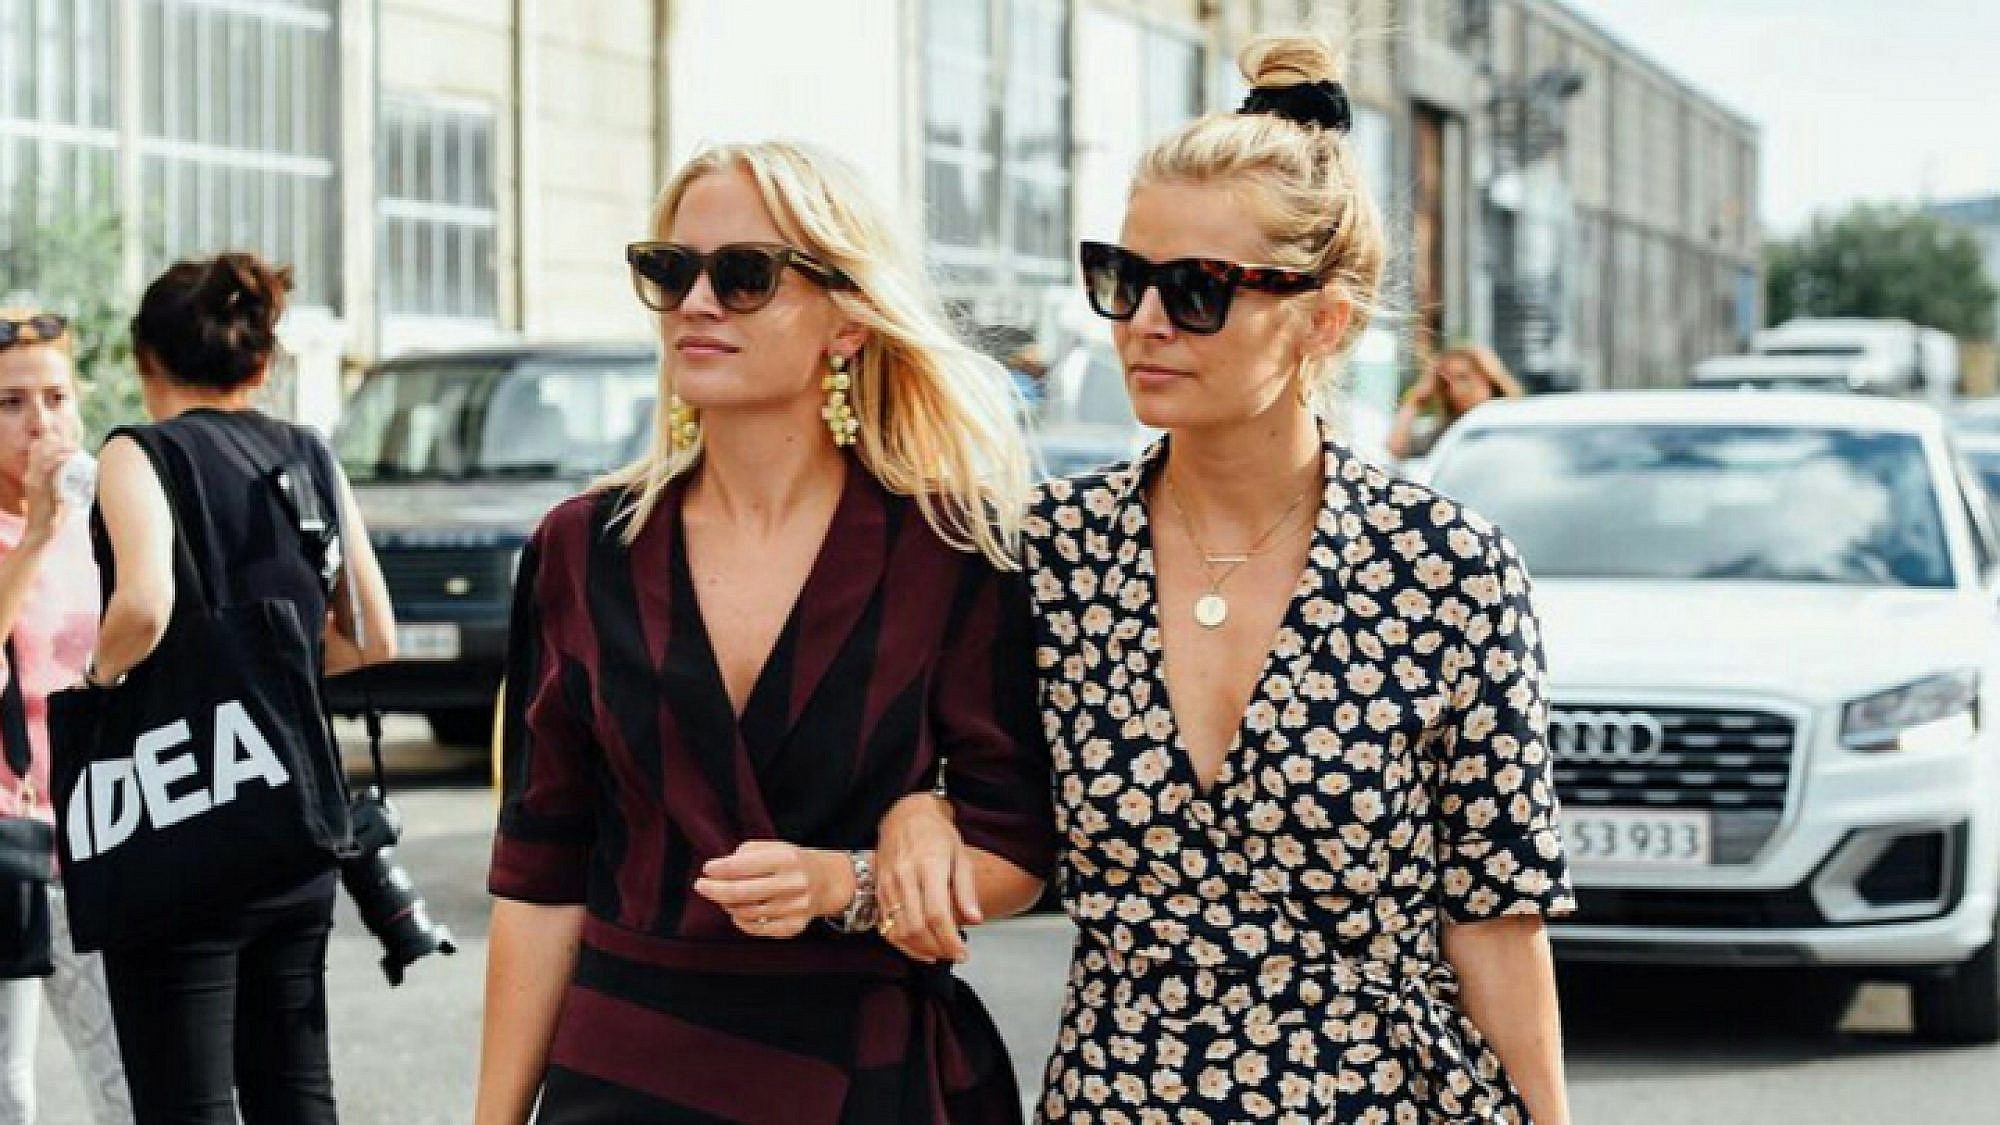 בלוגריות האופנה Johanne Brostrøm ו-Mie Juel לובשות גאני | צילום: מתוך האינסטגרם @ganni